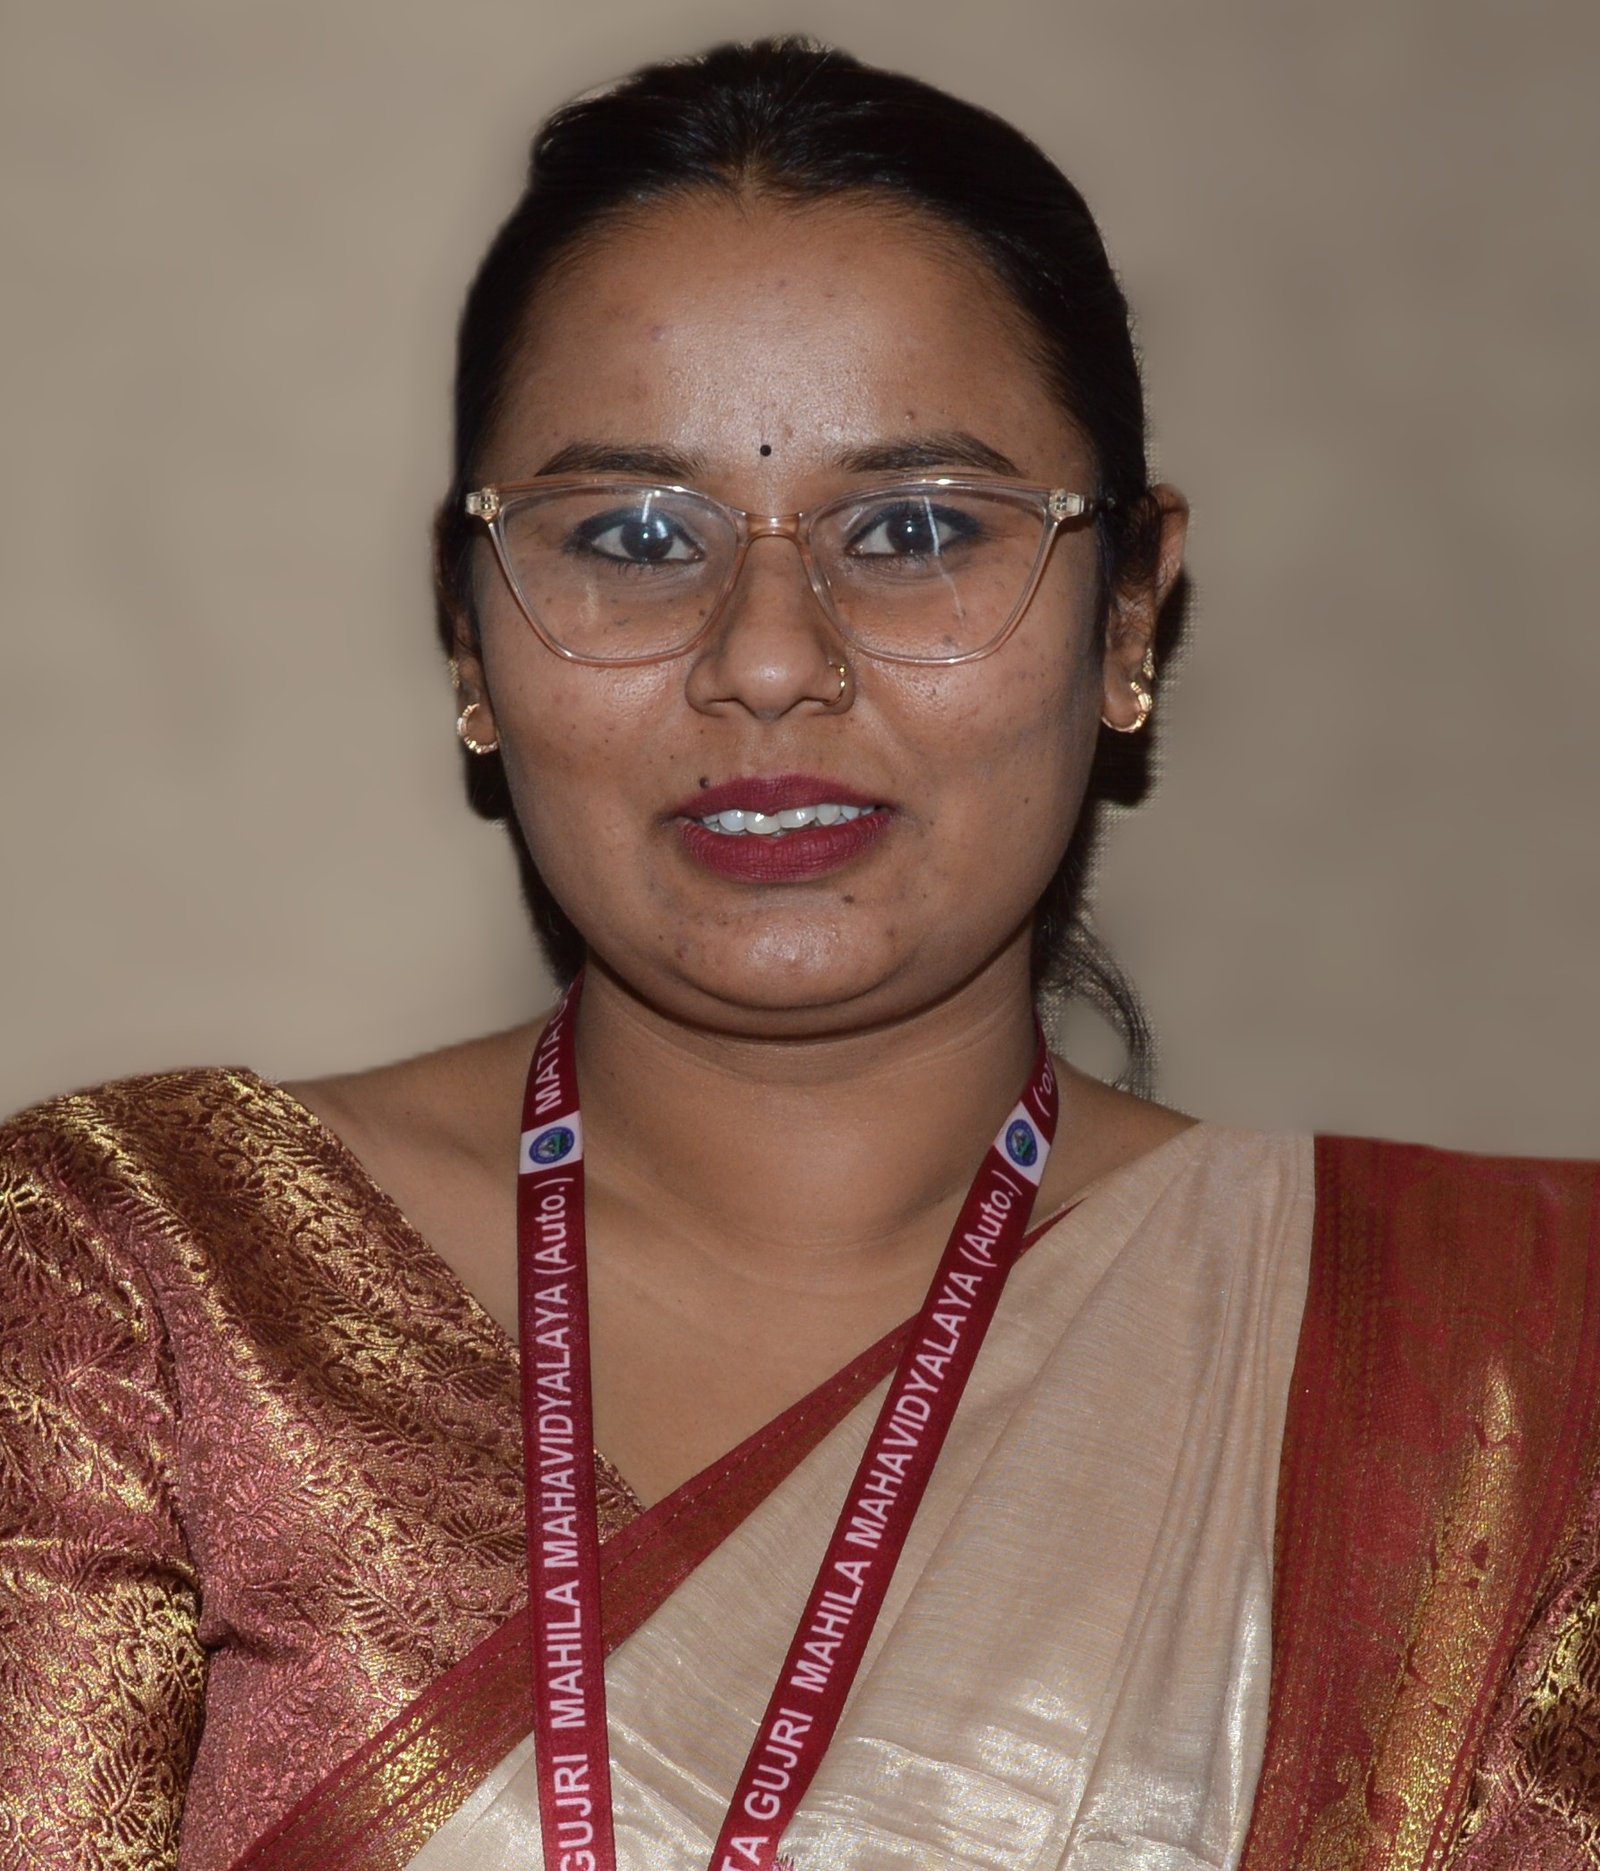 Ms. Shreya Kurariya